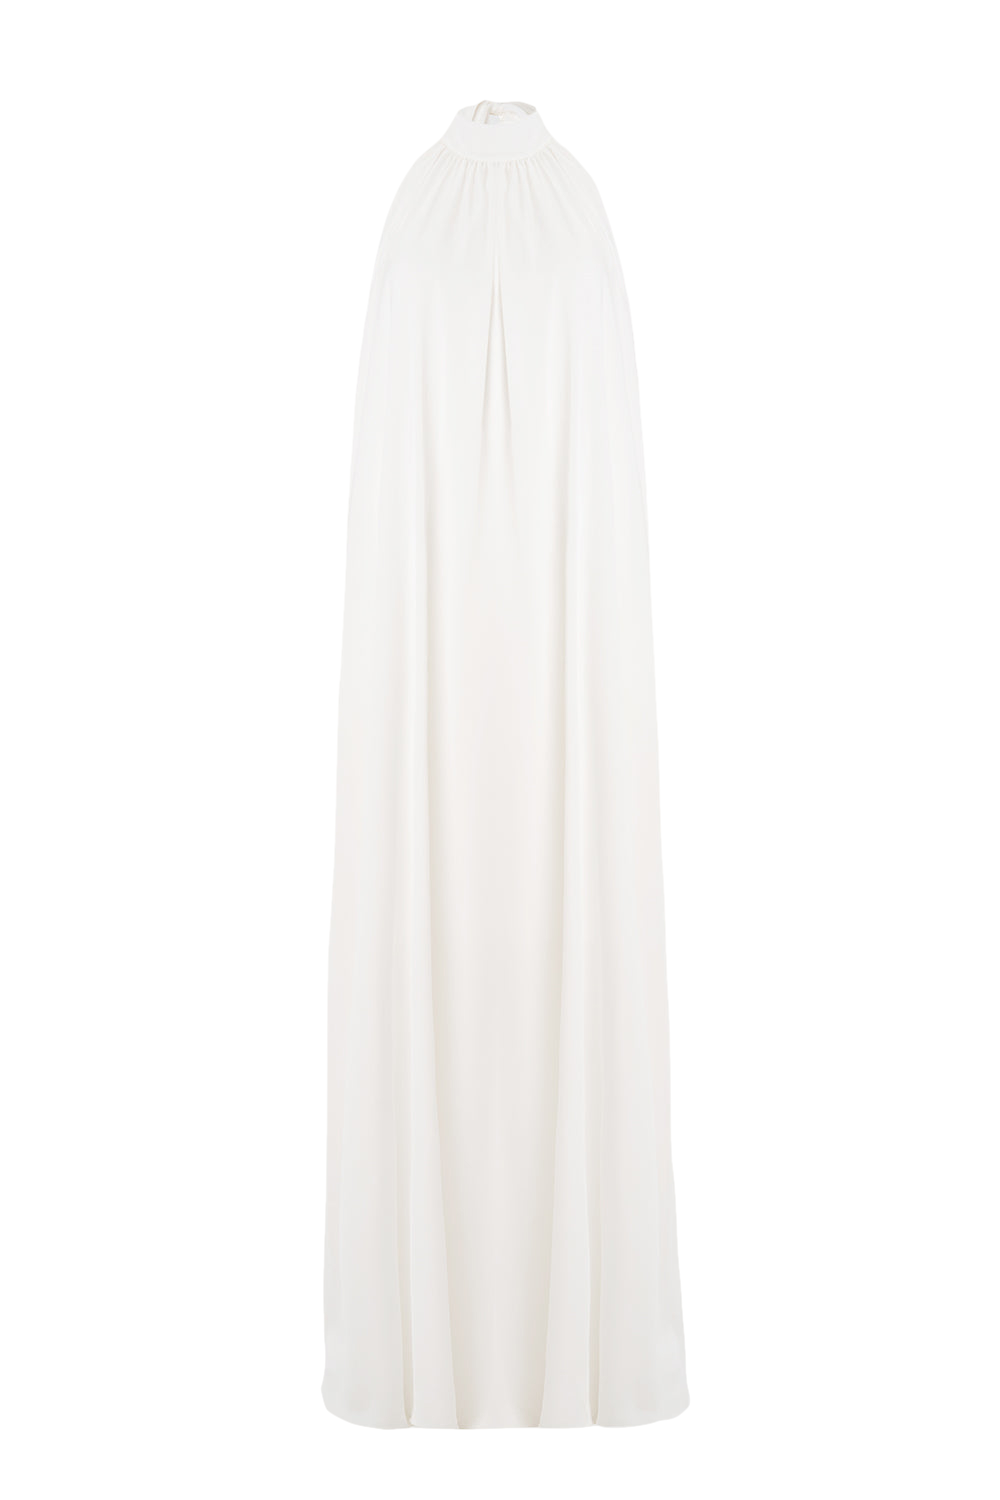 Pam Satin White Halter Maxi Dress von Lora Istanbul